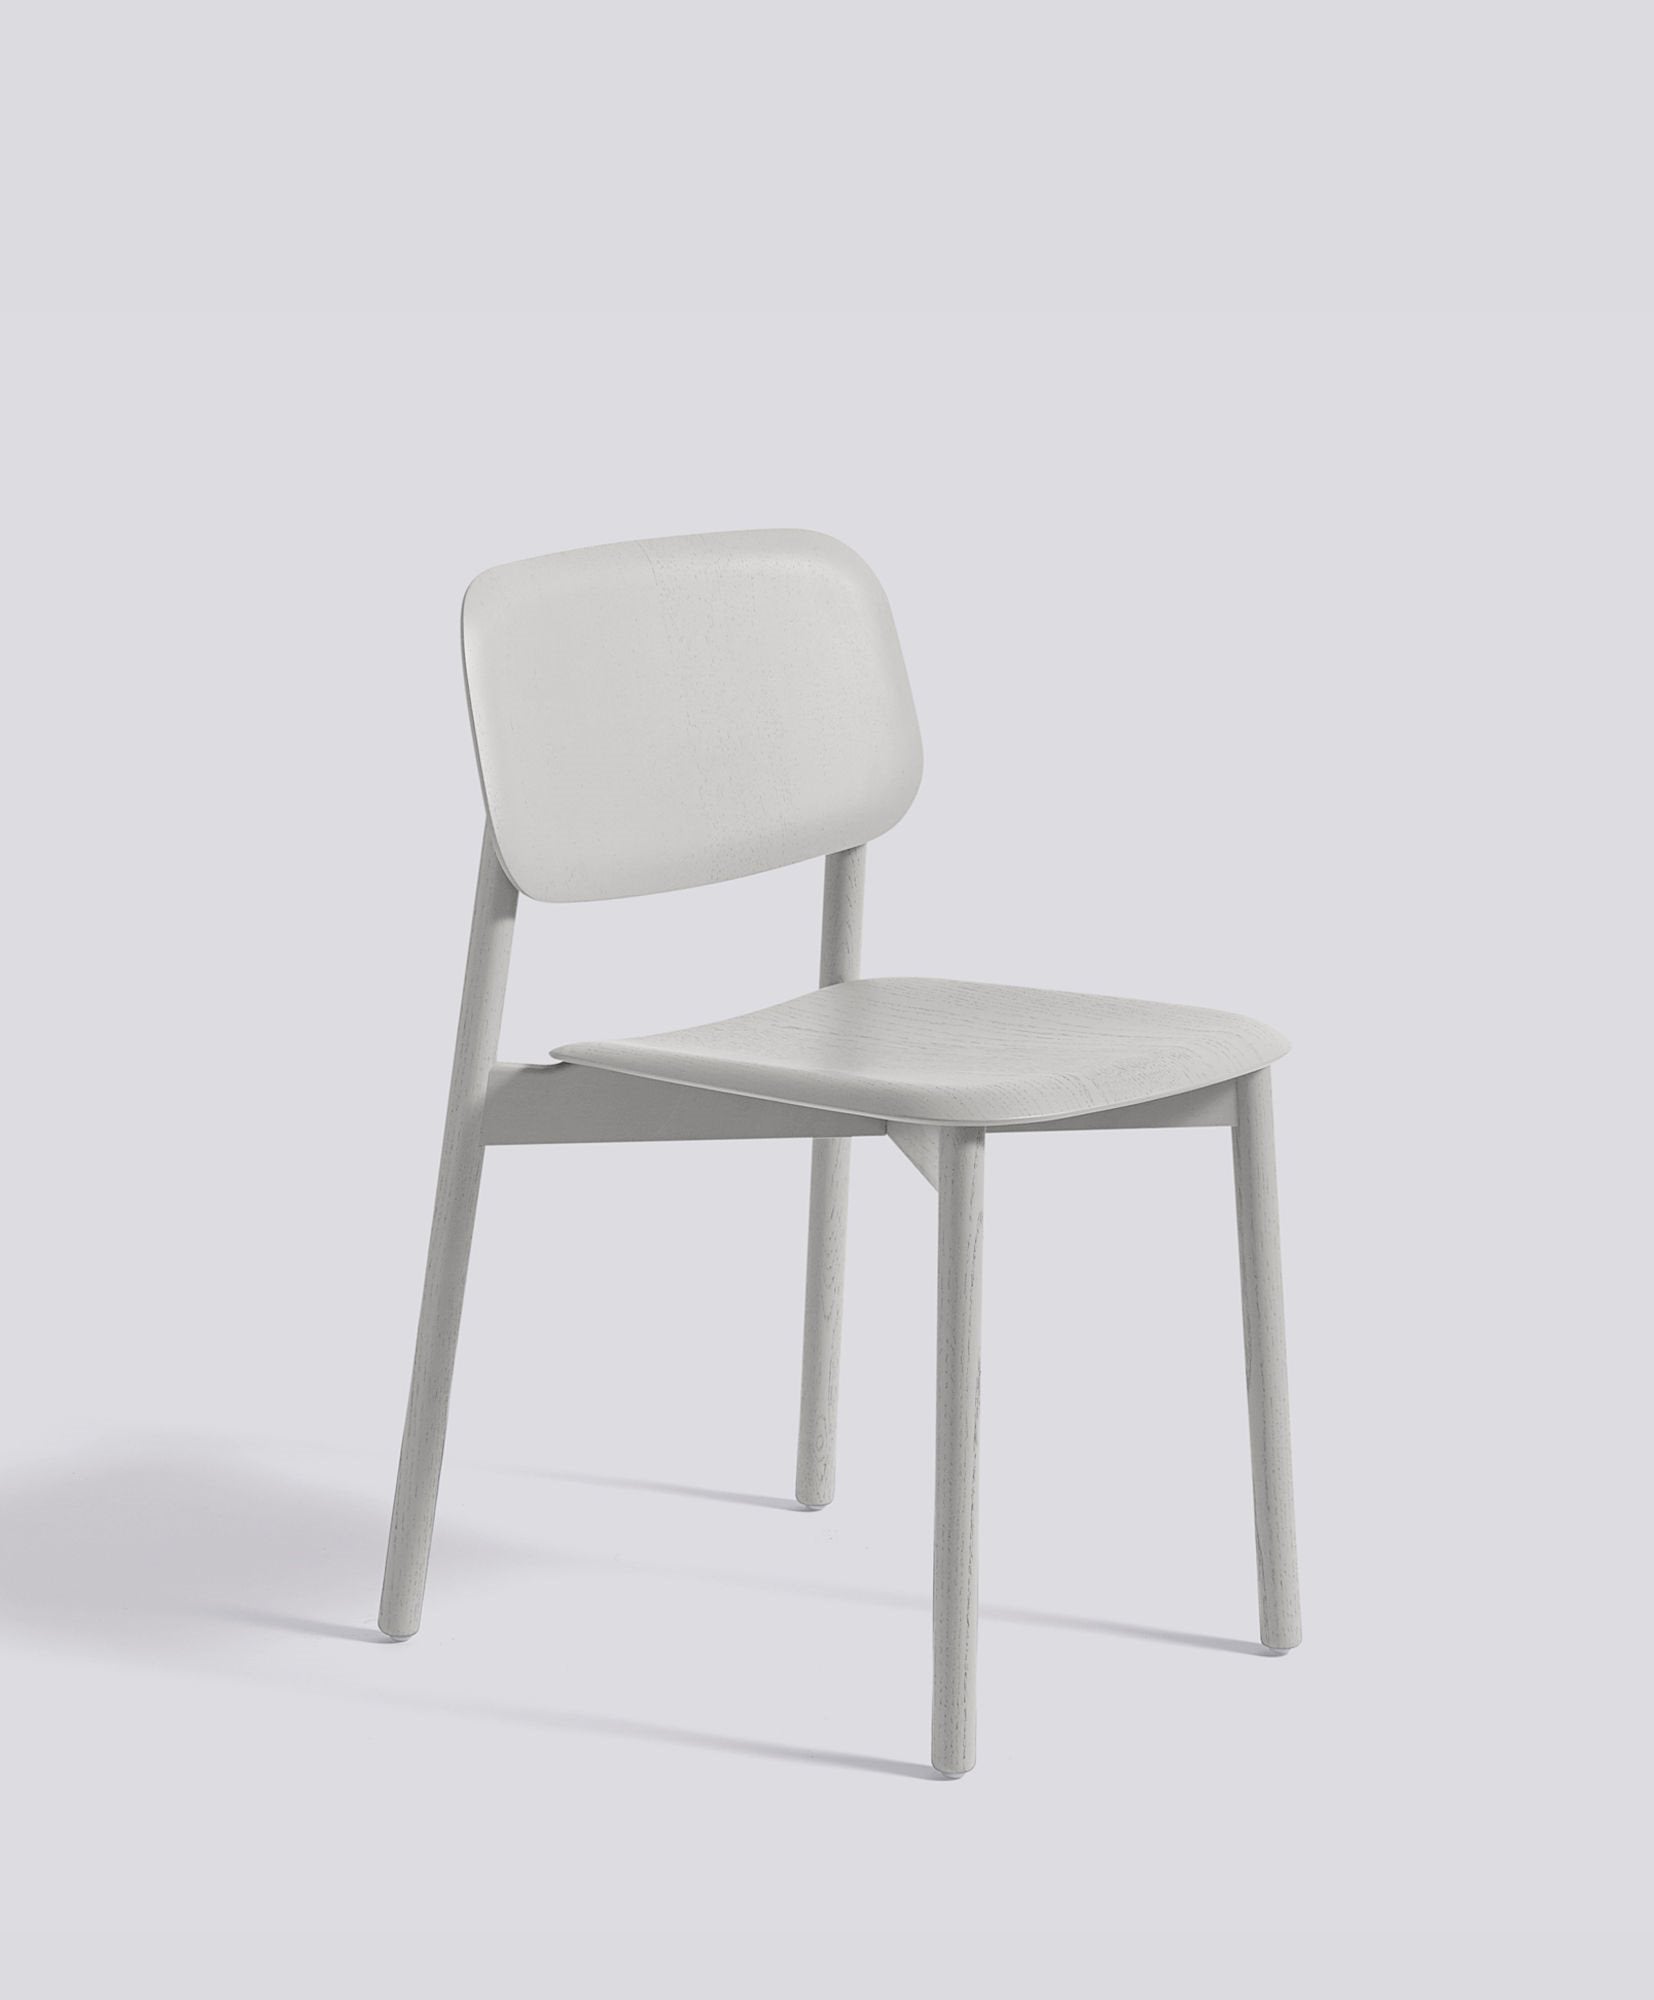 Soft Edge 60 Chair